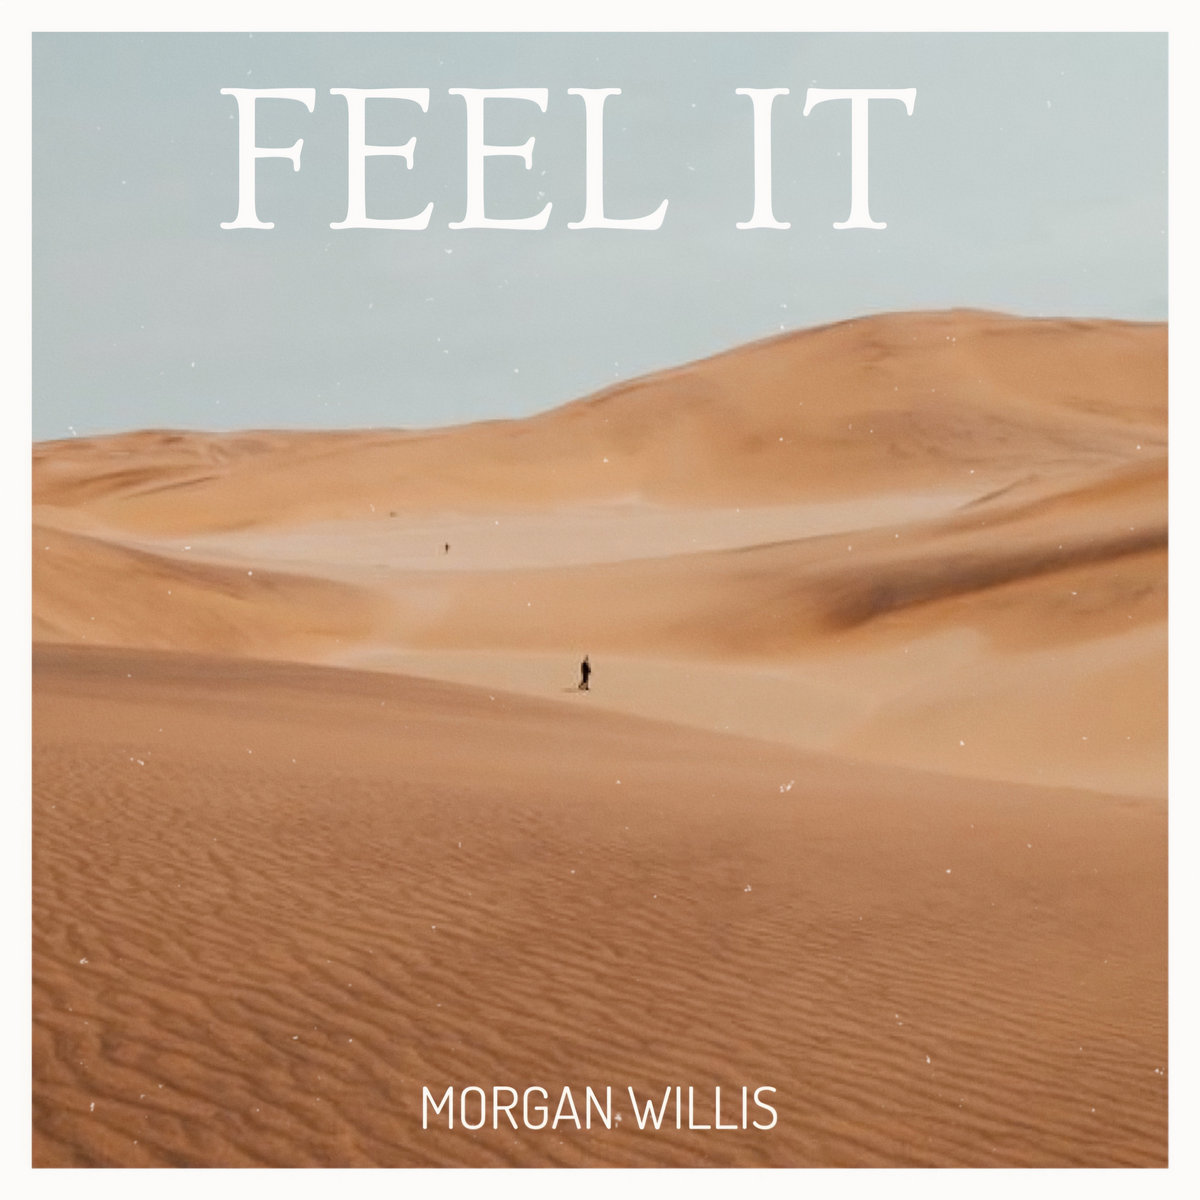 a1699438706 10 - Morgan Willis drops new single ‘Feel it’